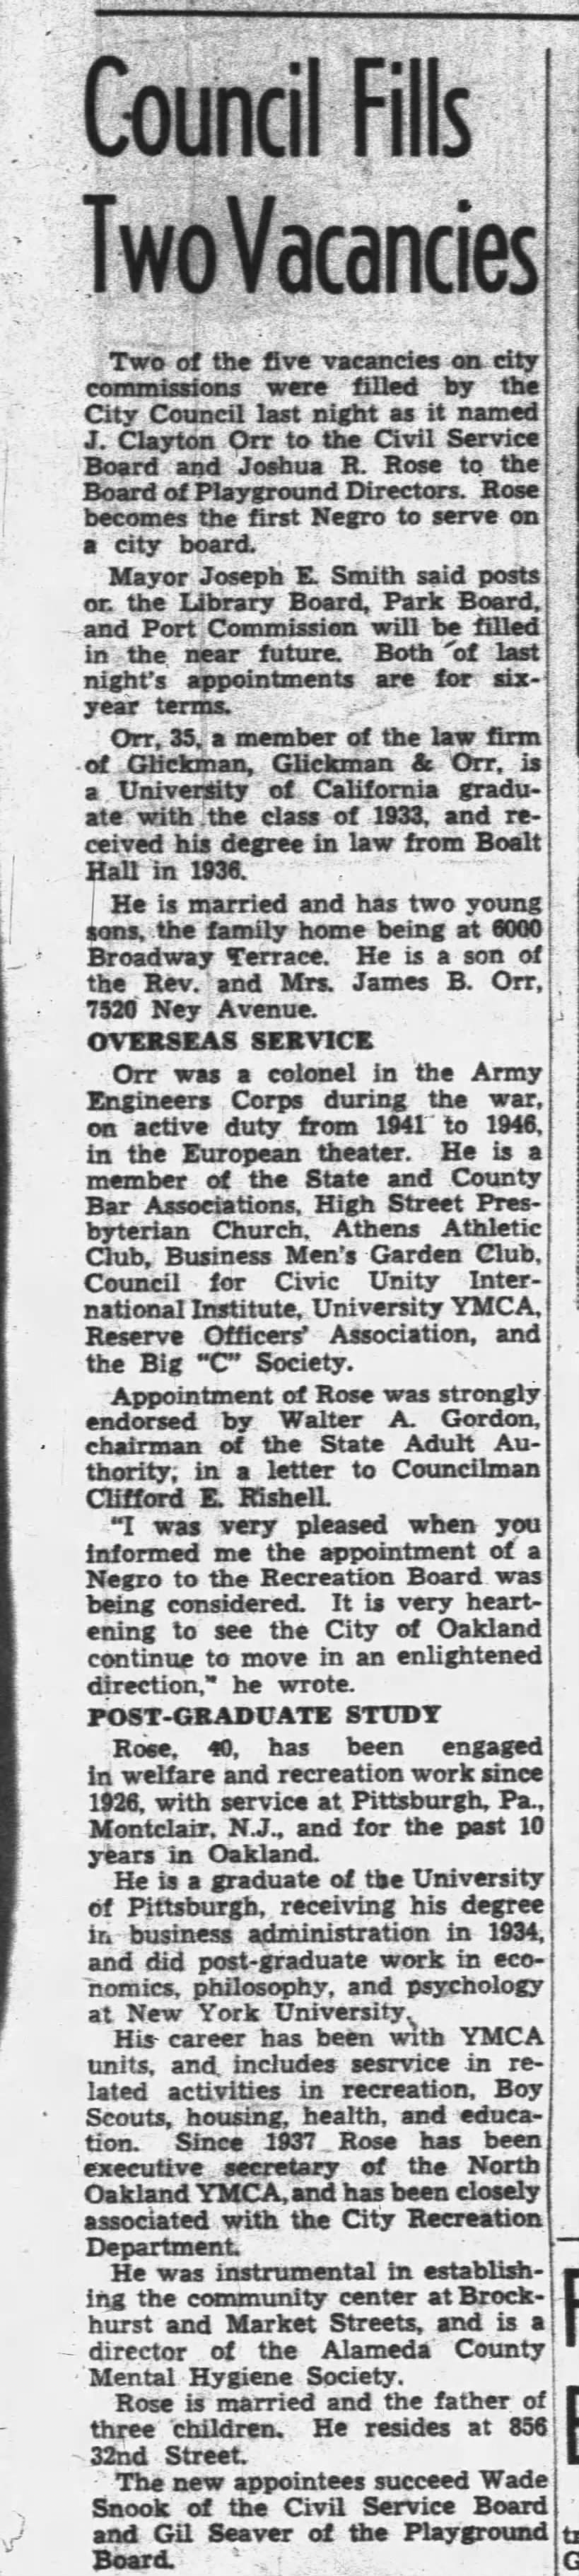 Council Fills Two Vacancies - Oakland Tribune July 18, 1947